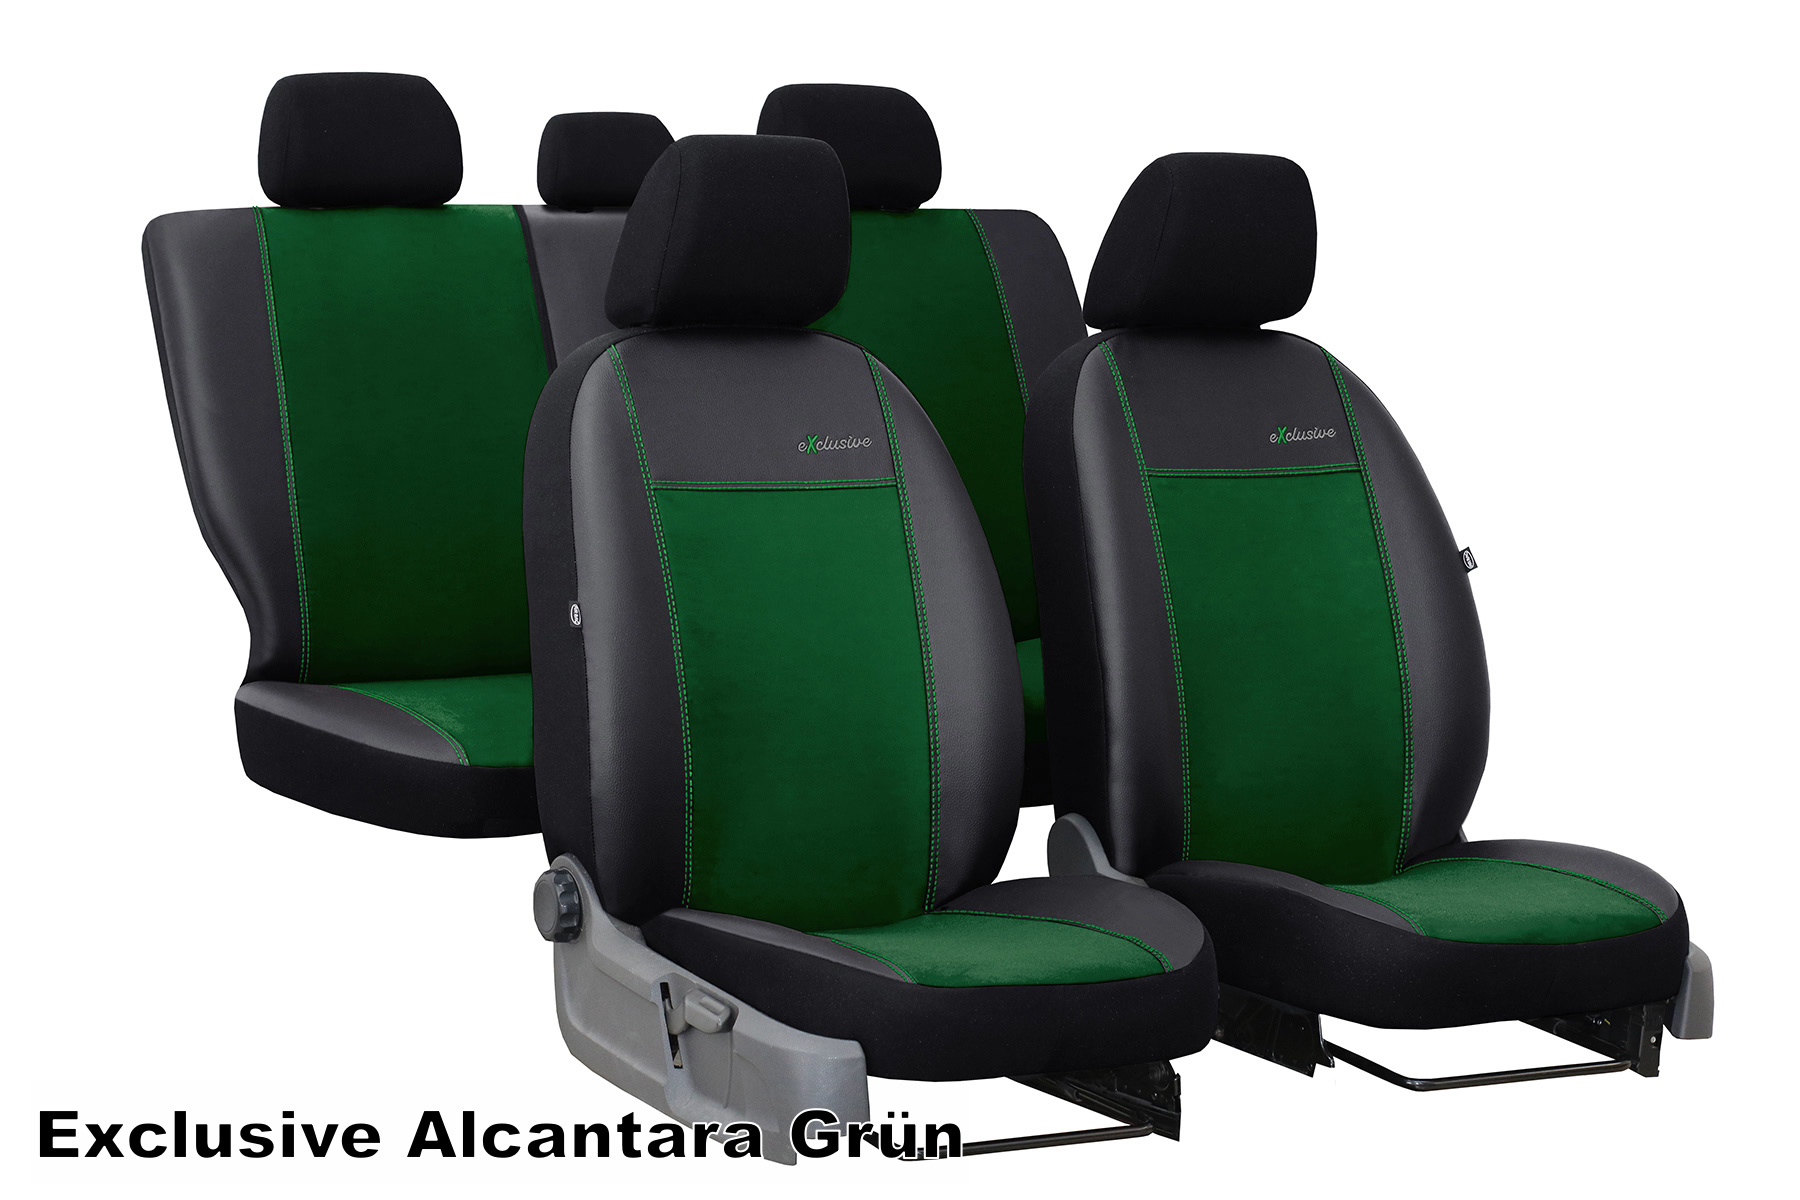 Sitzbezüge für Seat Alhambra günstig bestellen